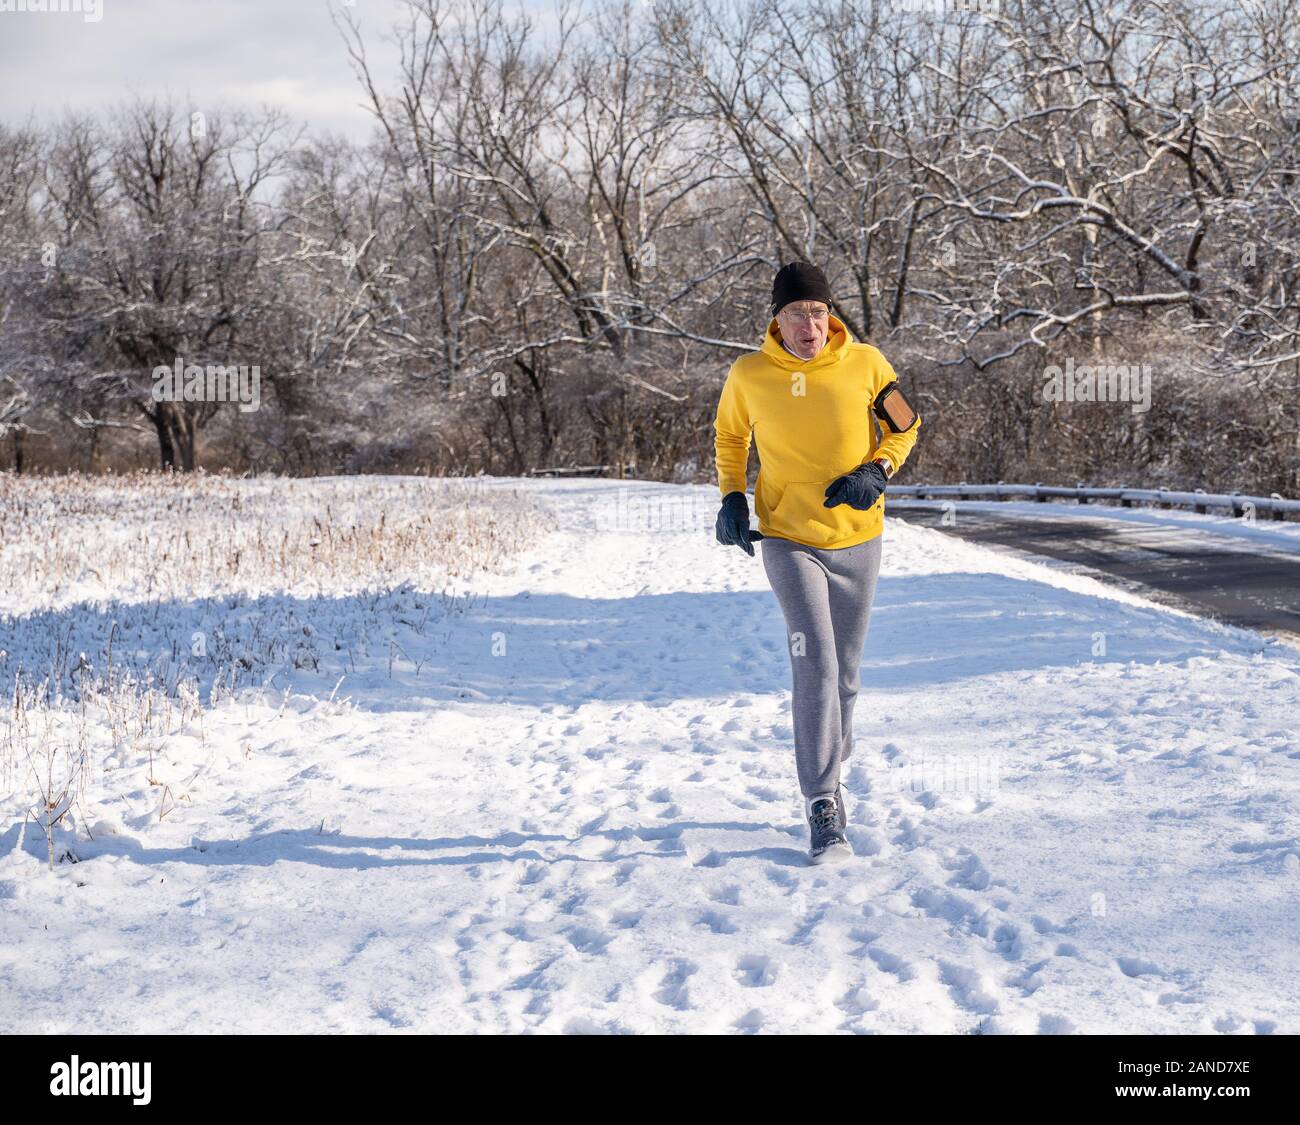 Comté de Berks, en Pennsylvanie, le 8 janvier 2020 : Senior man running on snowy path Banque D'Images